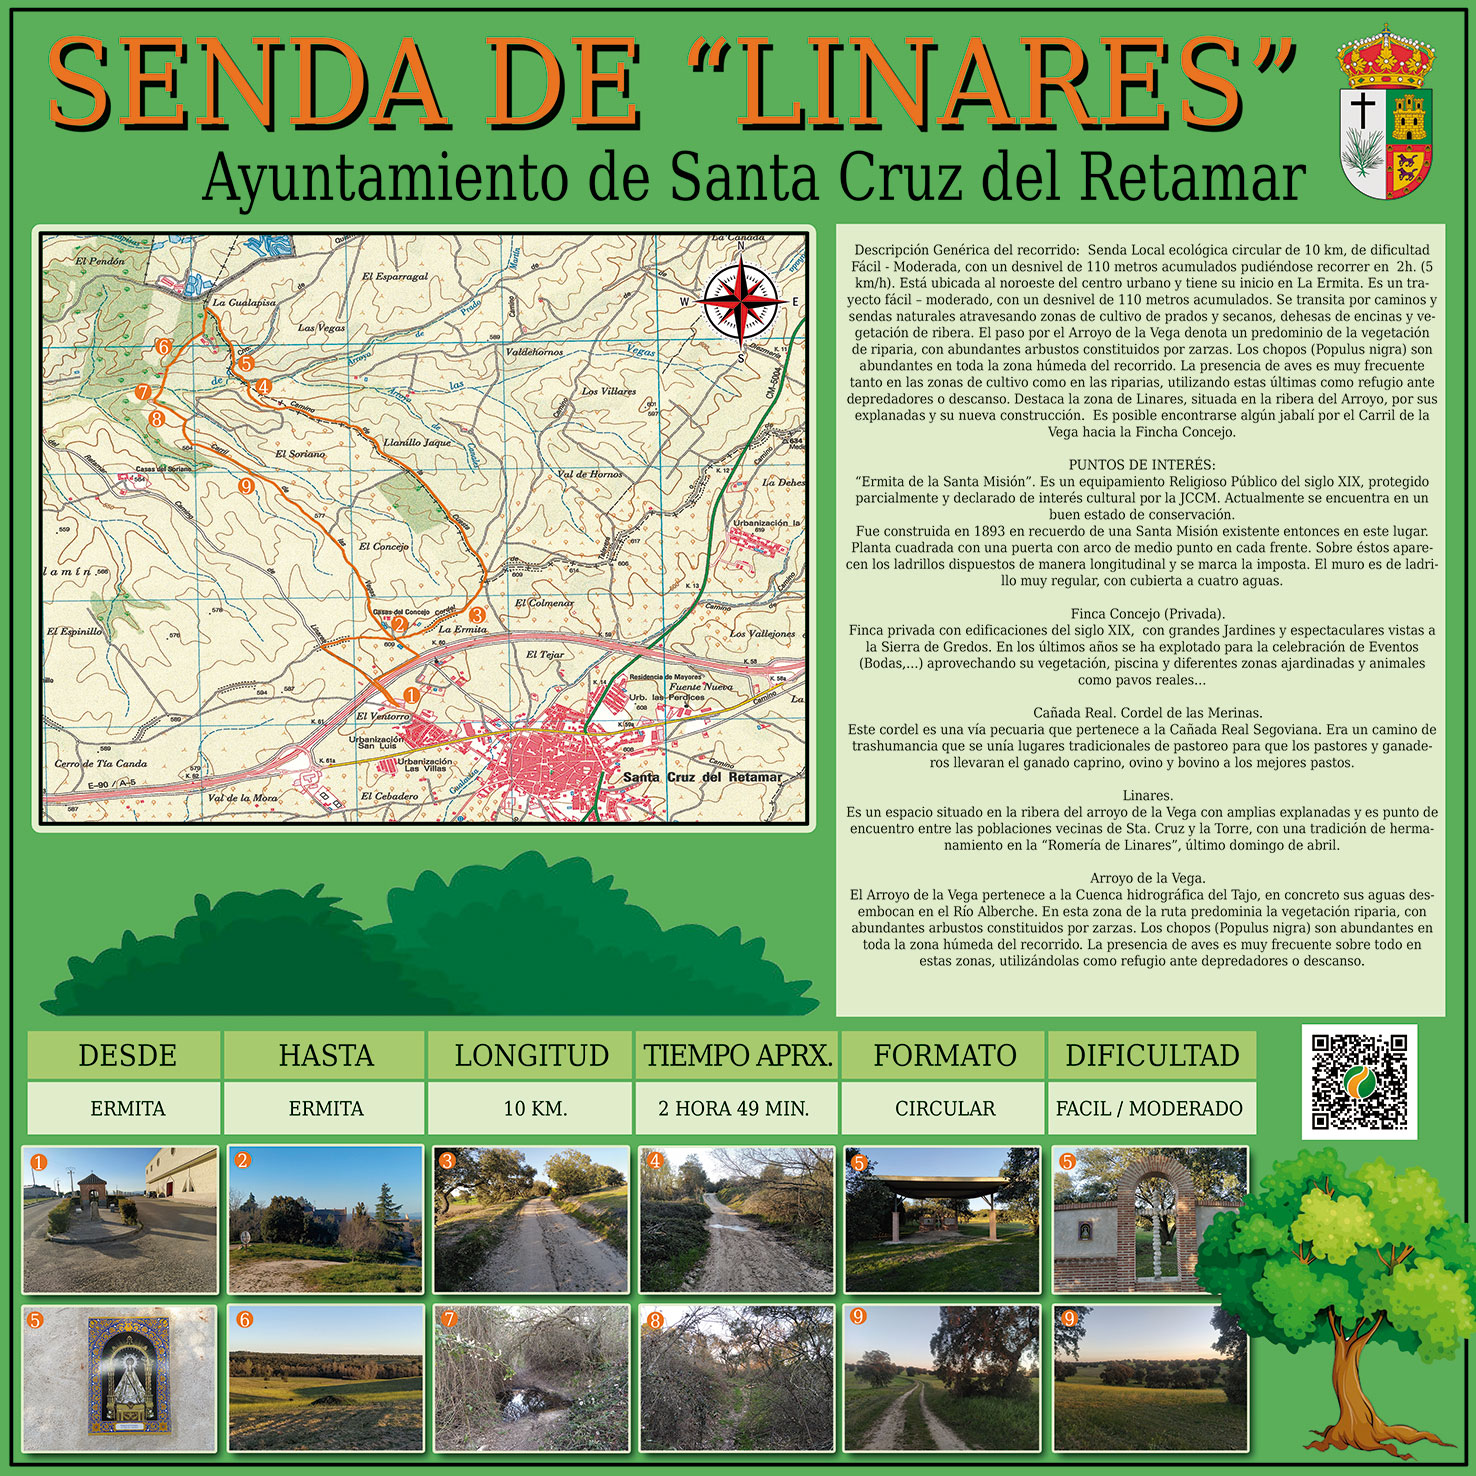 Senda Rutas Saludables Linares - Concejalía de Deportes del Ayuntamiento de Santa Cruz del Retamar